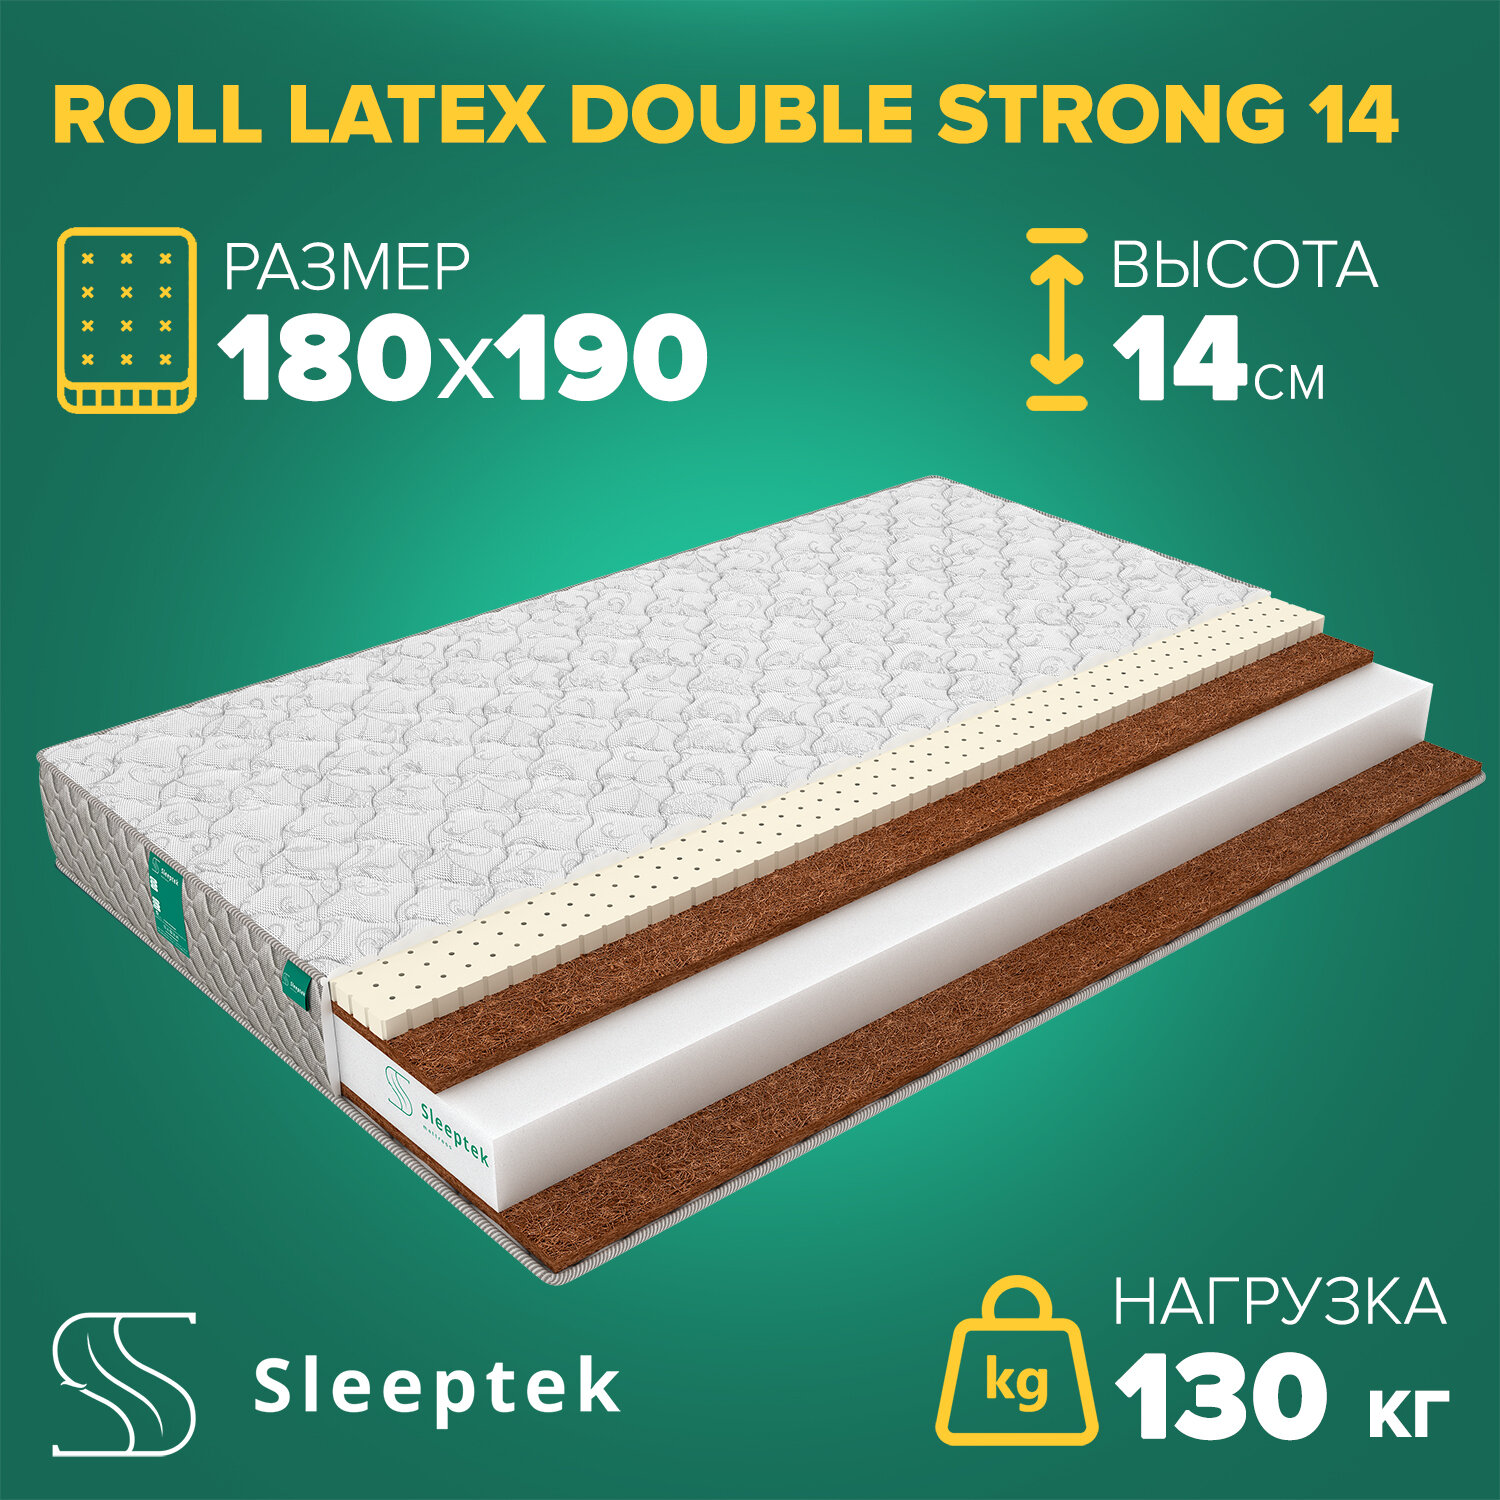 Матрас Sleeptek Roll Latex DoubleStrong 14 180х190